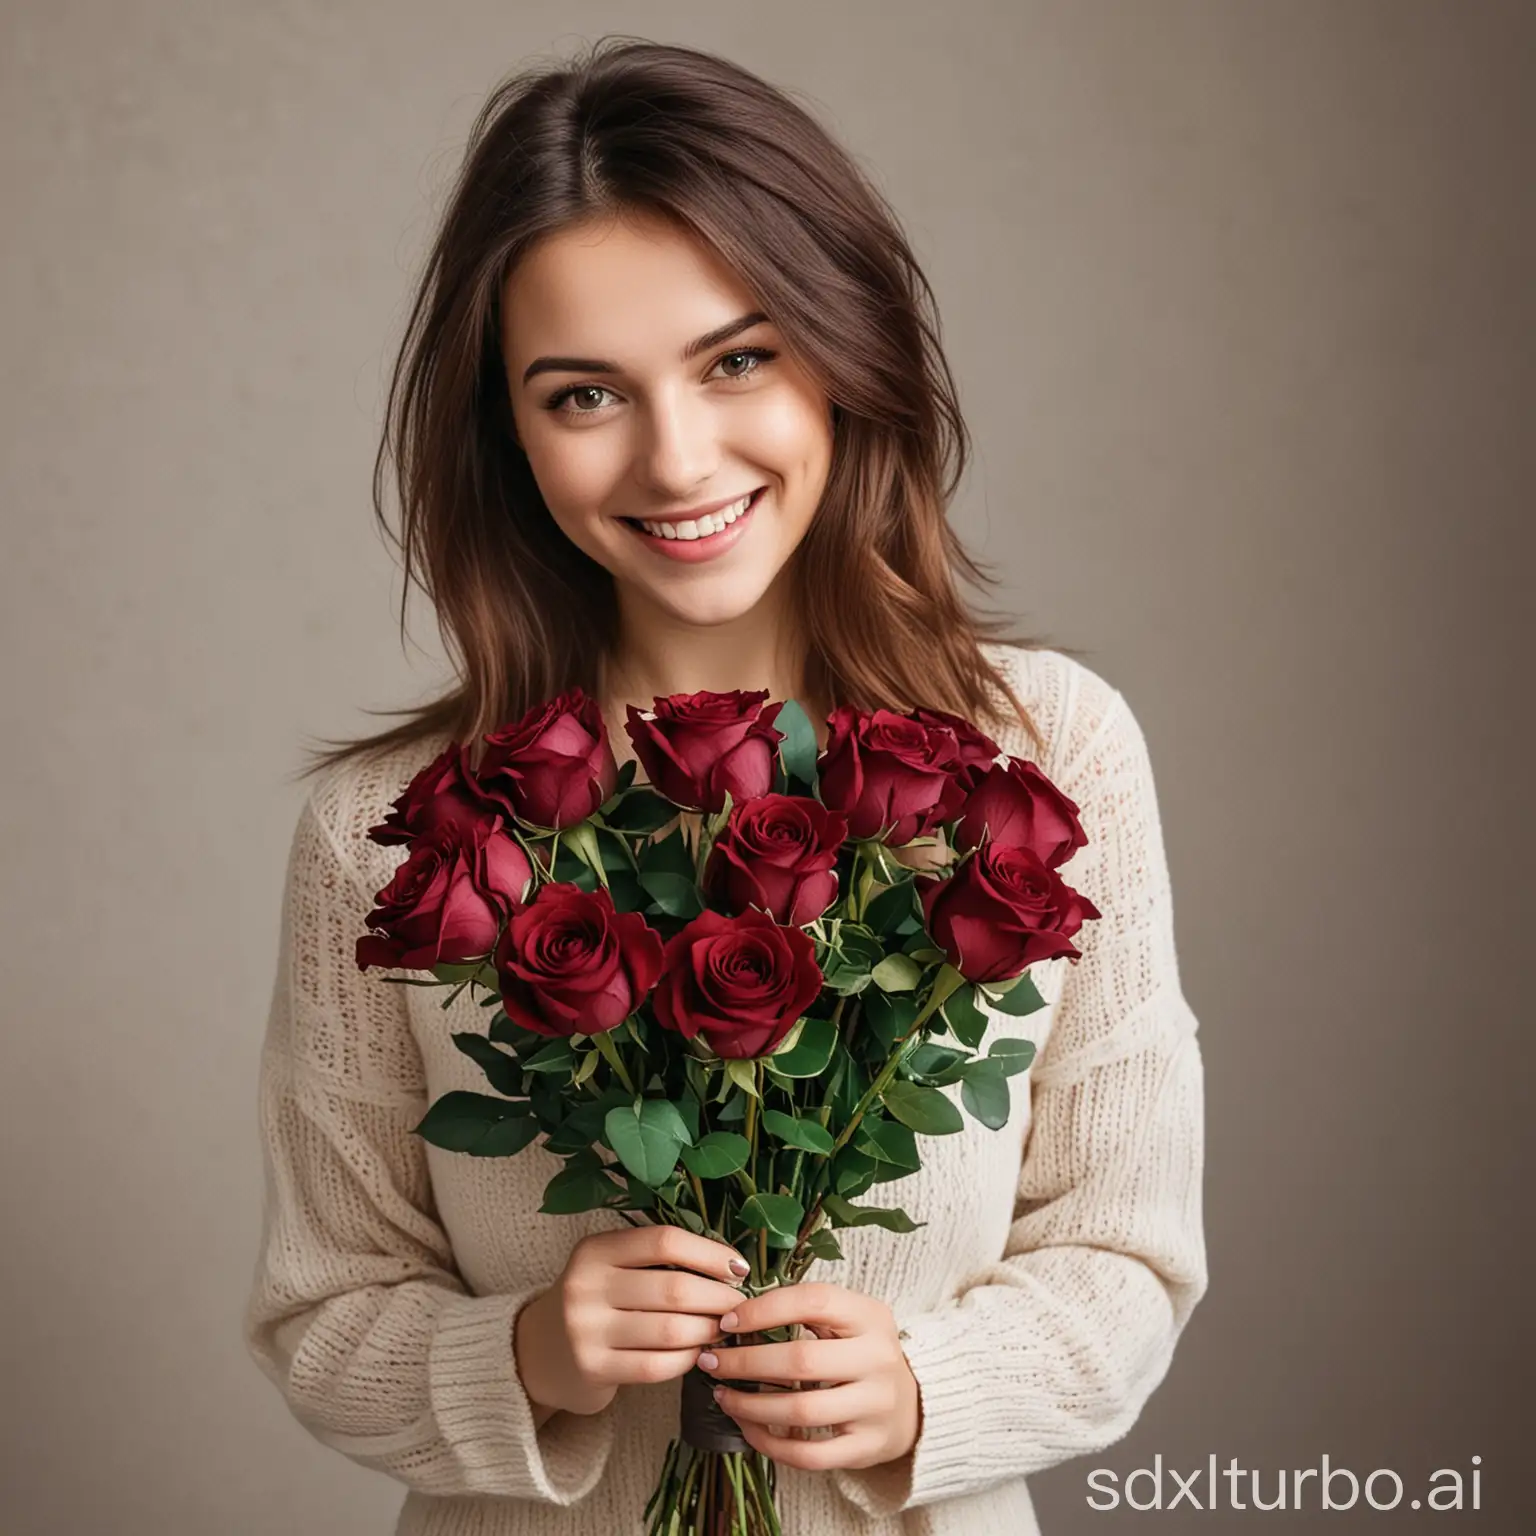 Девушка прижимает к себе букет из бордовых роз и улыбается